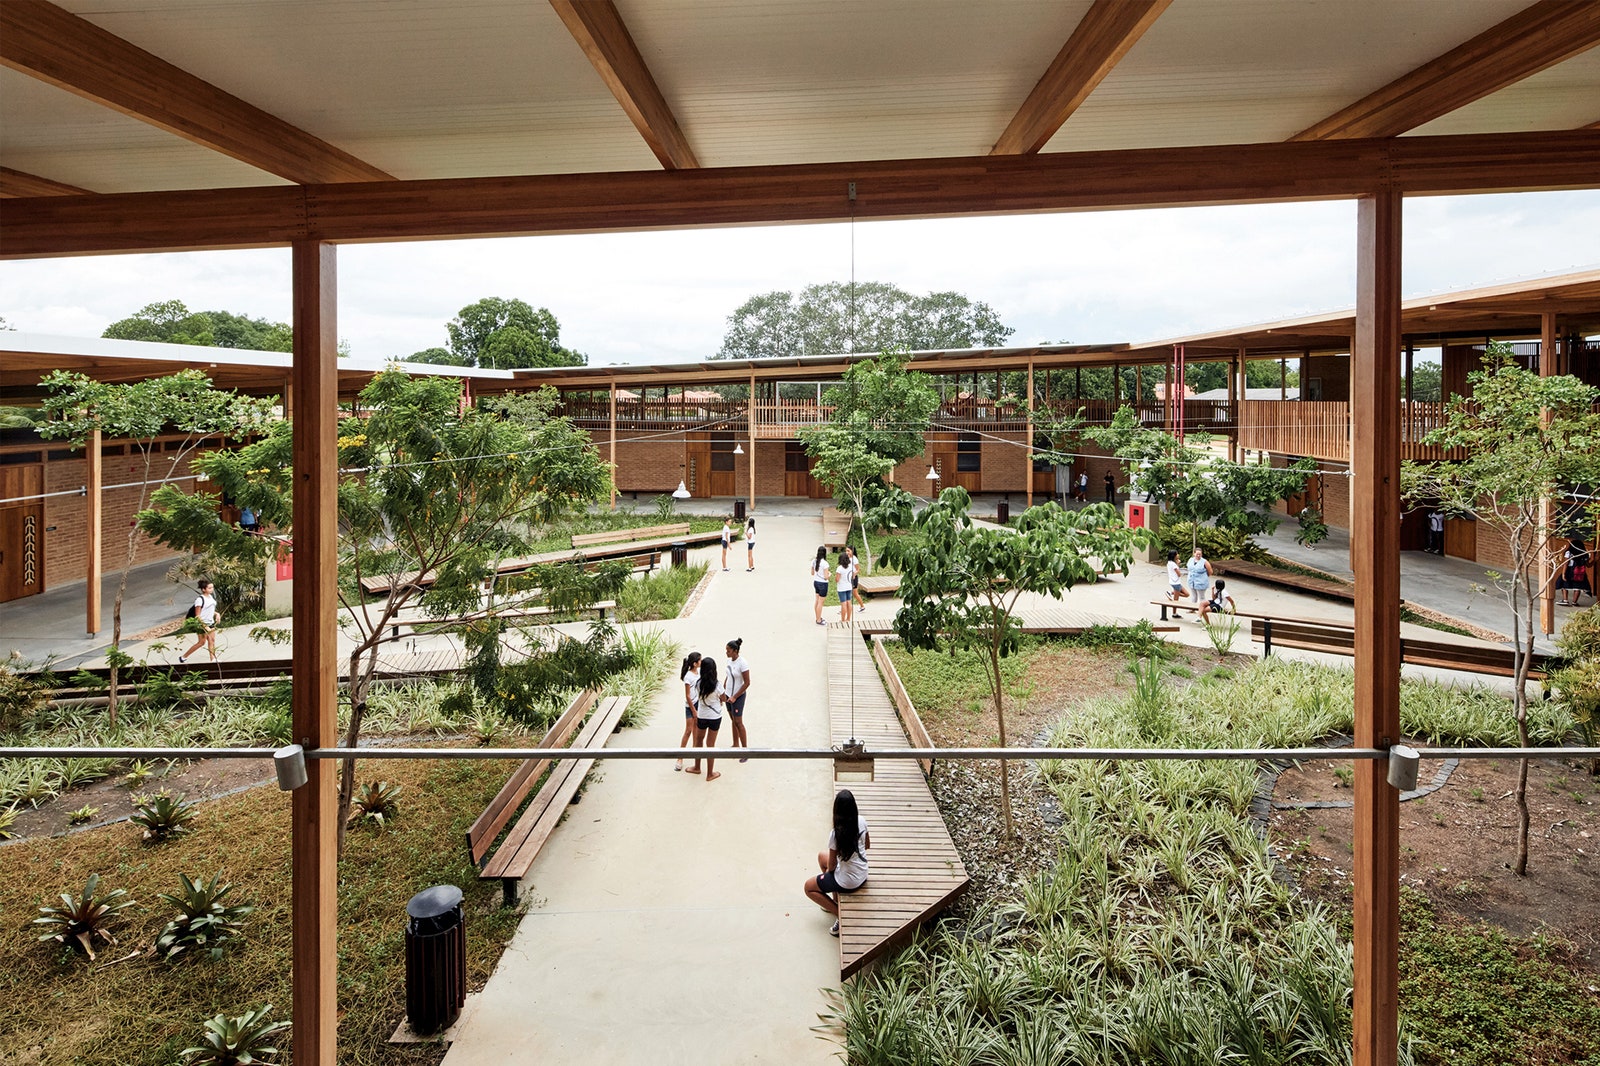 Премия RIBA 2018 школаинтернат в Бразилии признана лучшим зданием в мире